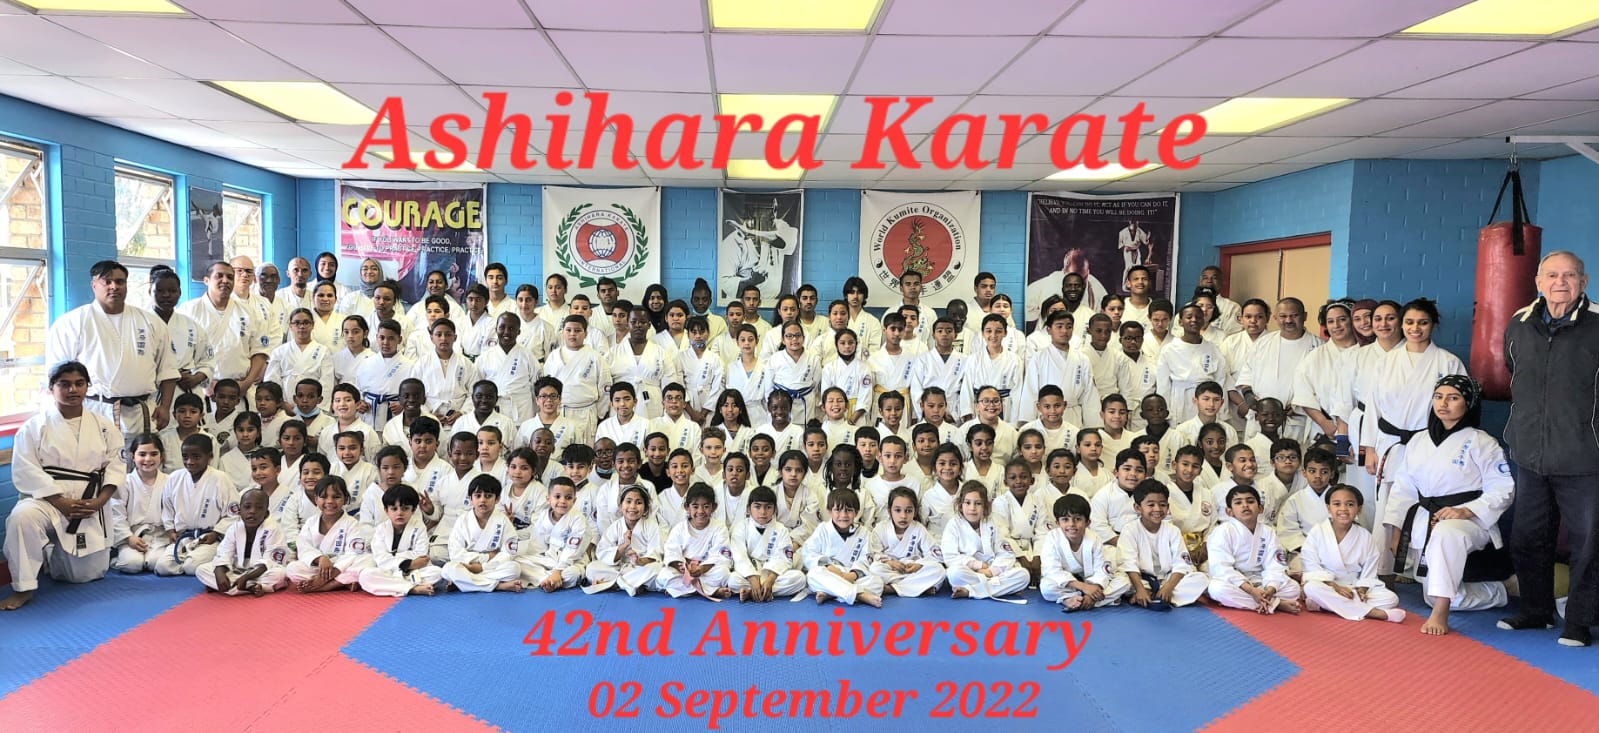 42nd Anniversary Training - Ashihara Karate International